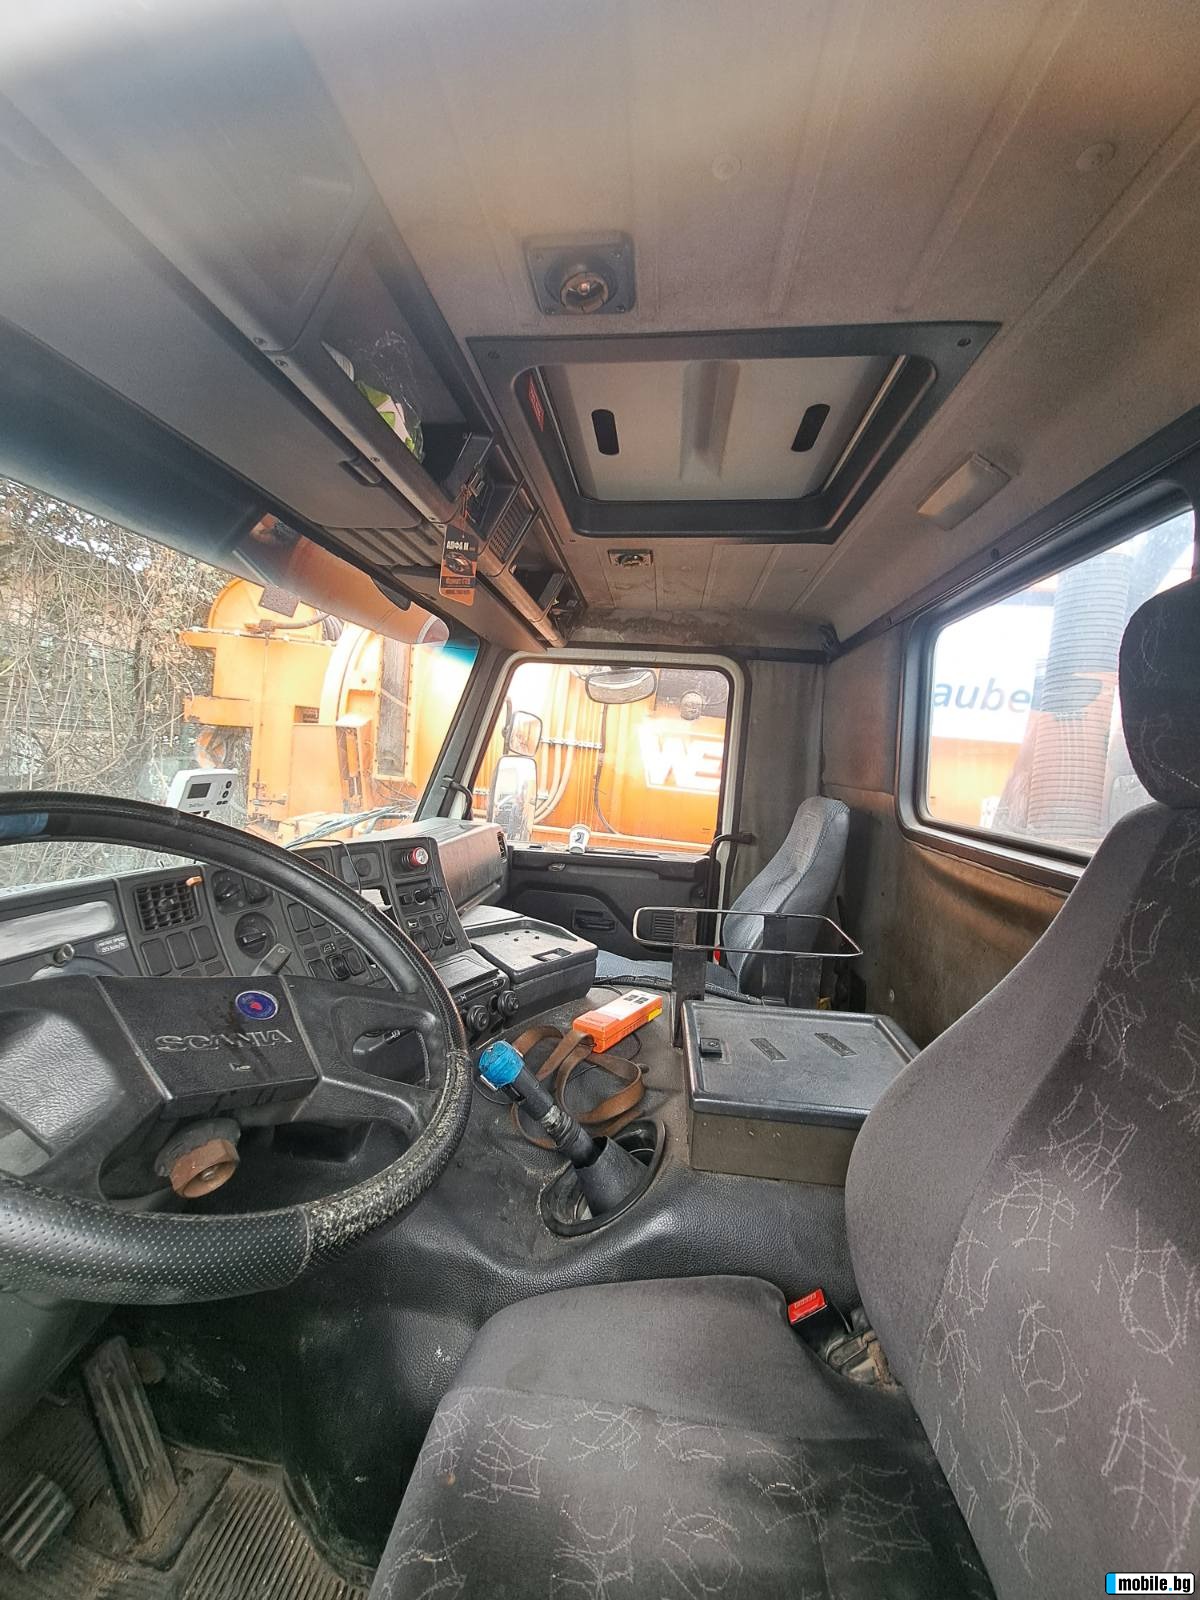 Scania 93  | Mobile.bg   7